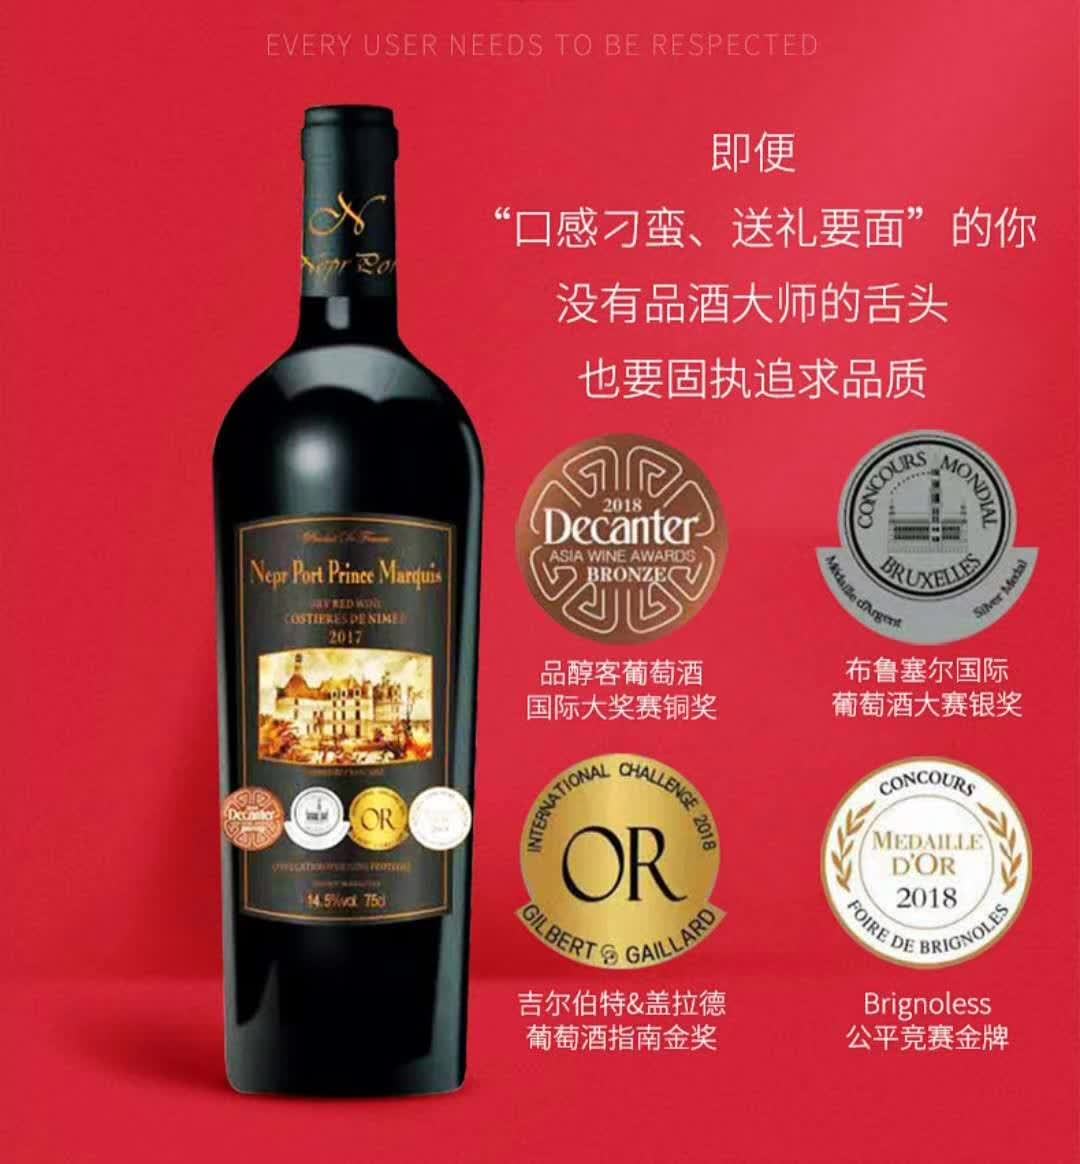 上海万耀诺波特系列王爵干红葡萄酒现货供应法国进口尼姆经典产区1200g重型瓶红酒进口红酒葡萄酒代理加盟